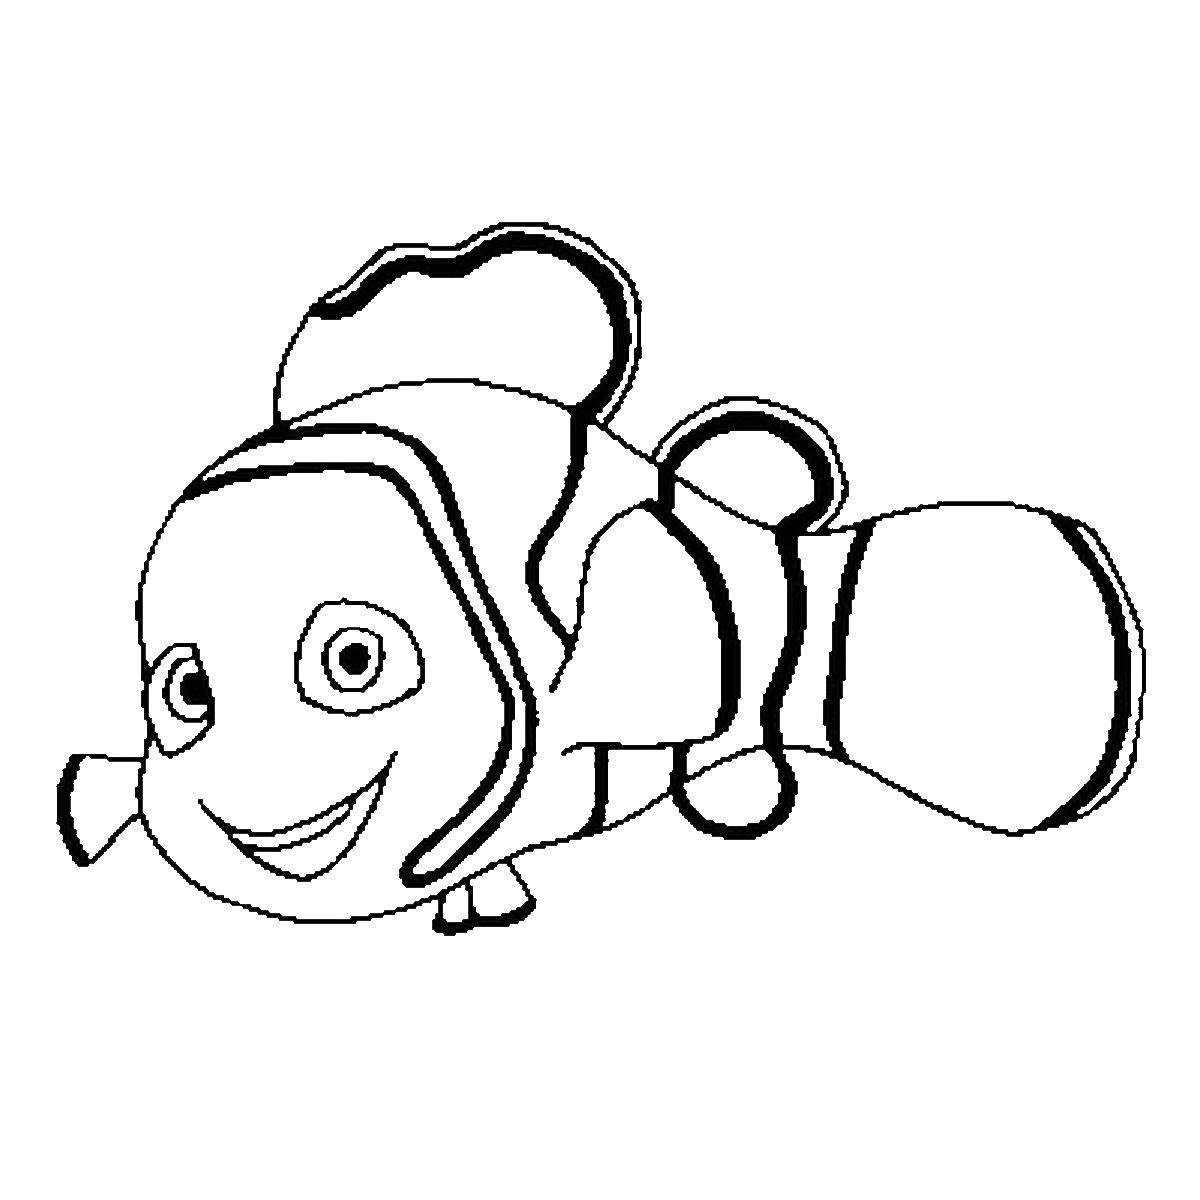 Название: Раскраска Немо из мультфильма  в поисках немо . Категория: Персонаж из мультфильма. Теги: Подводный мир, рыба, Немо.